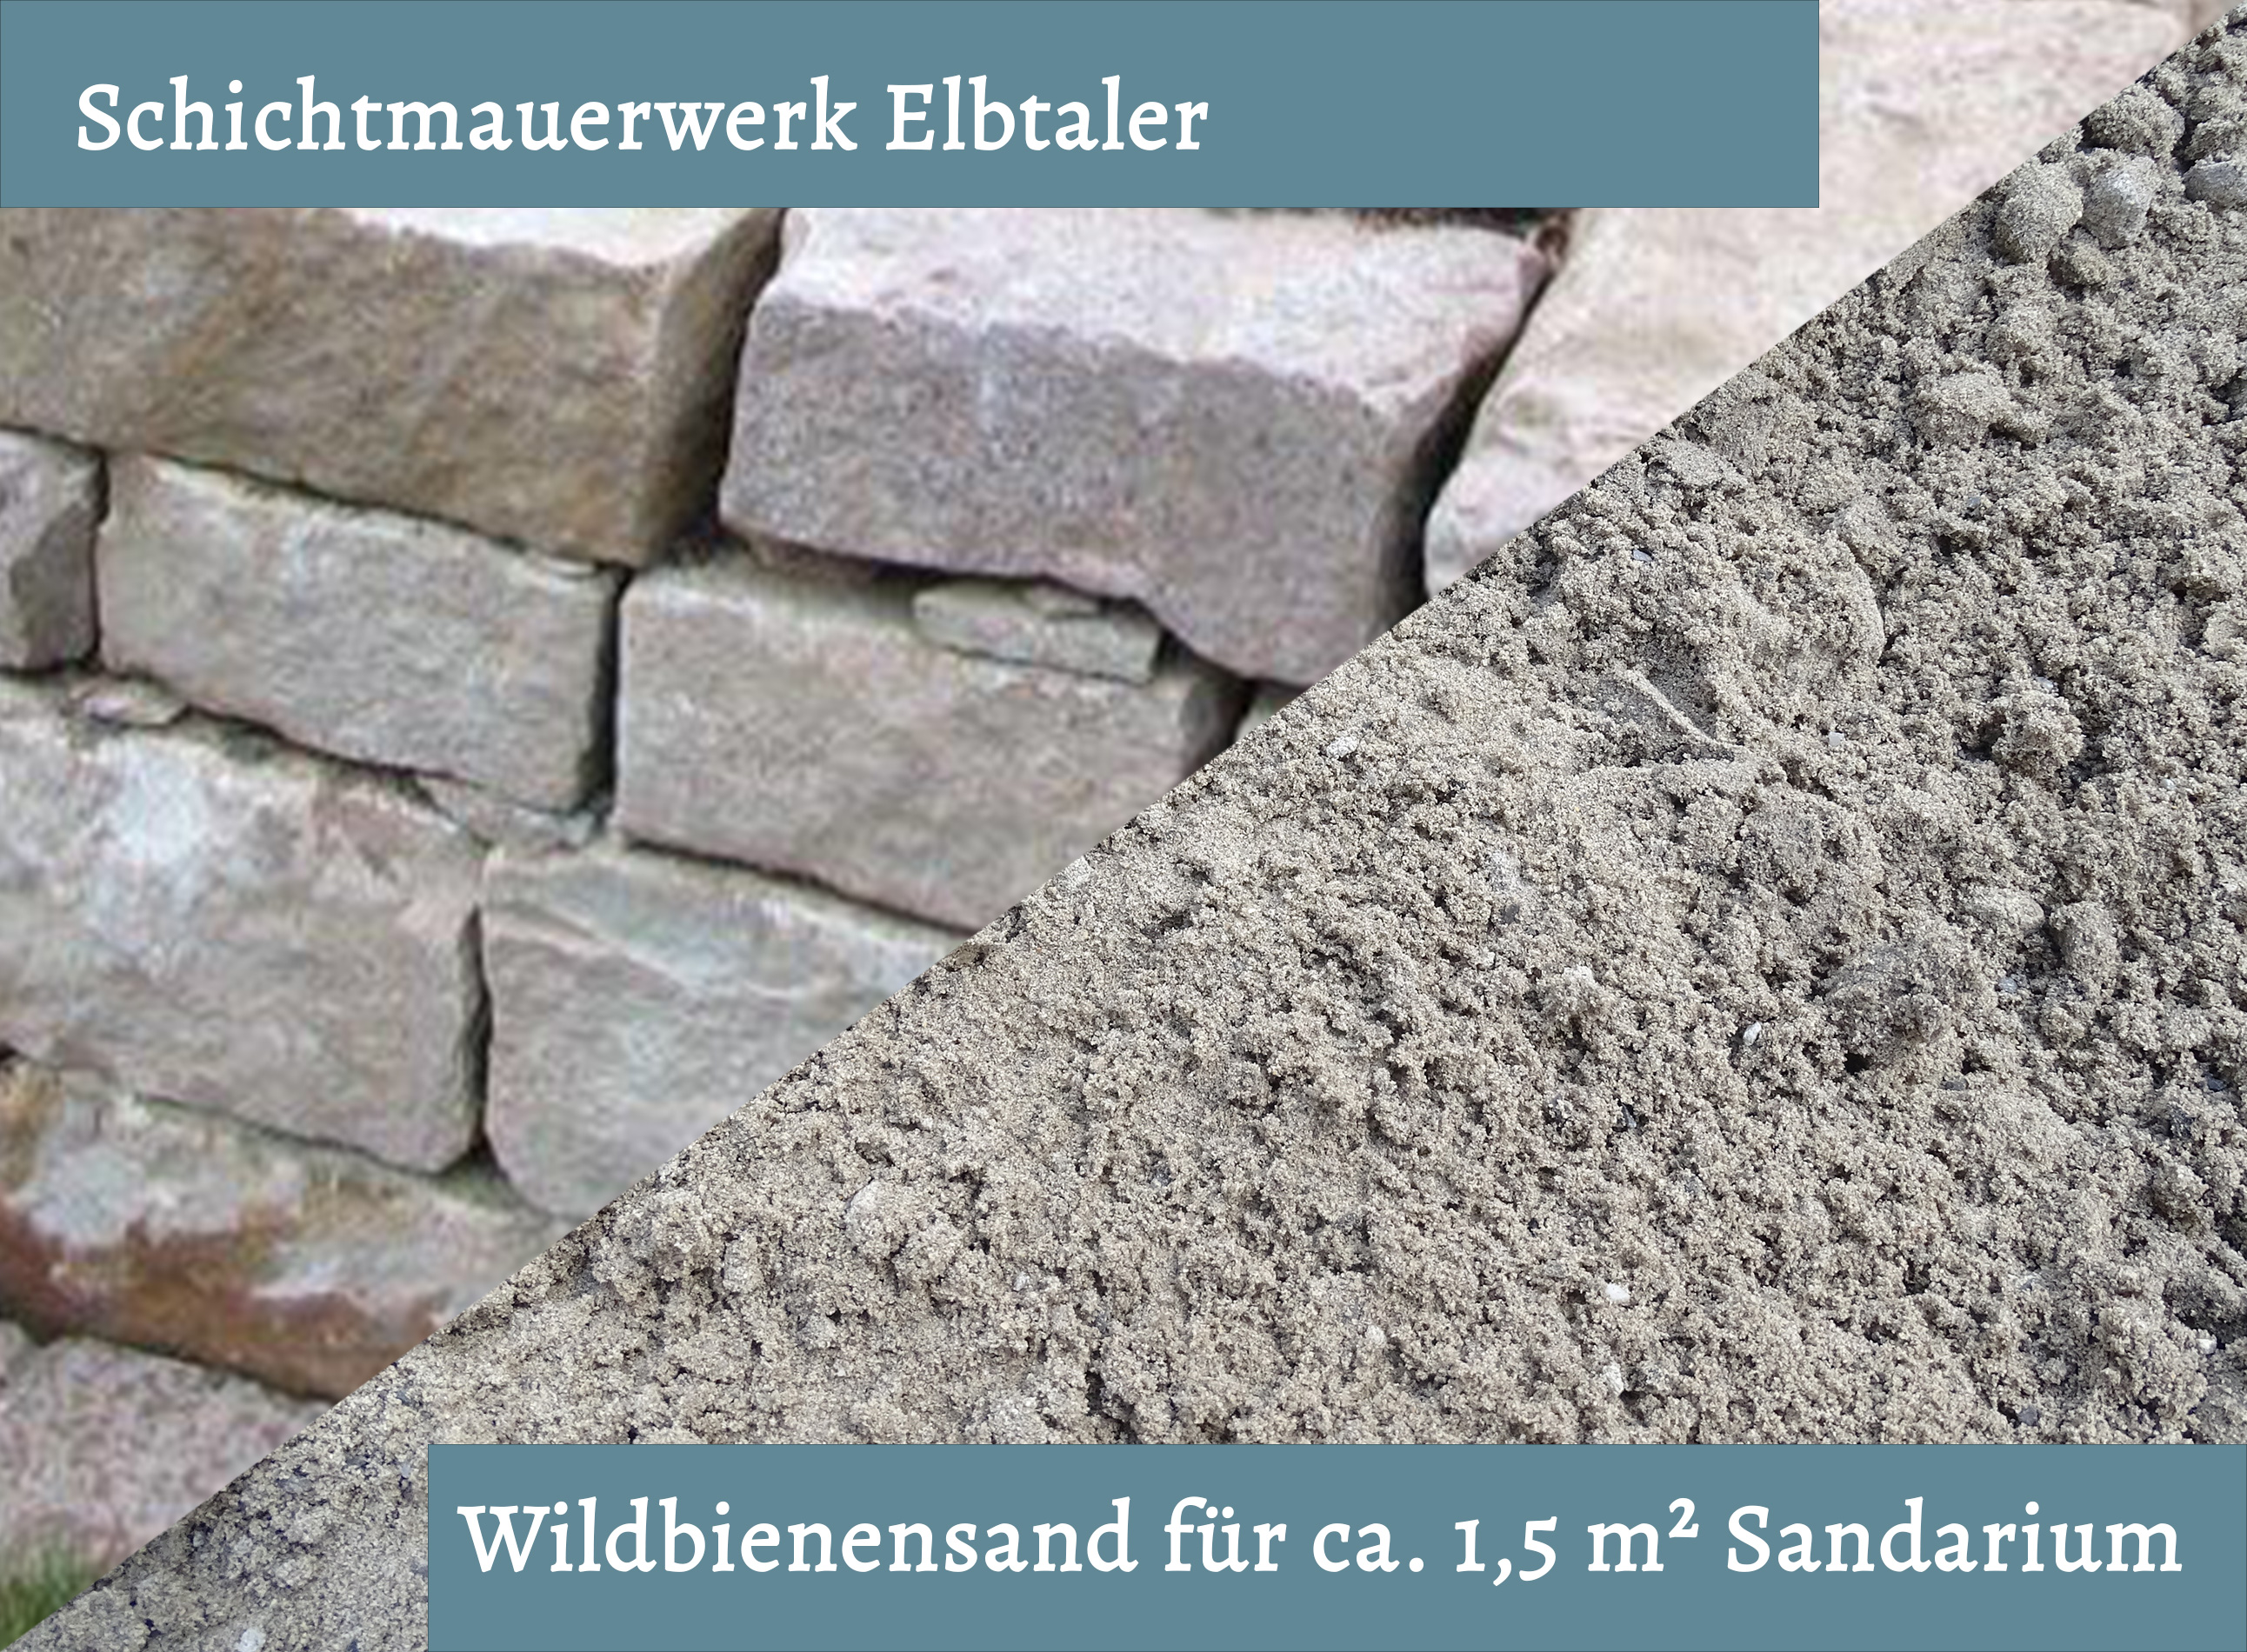 Wildbienensand mit Schichtmauer Elbtaler für Sandarium 1,5 m²